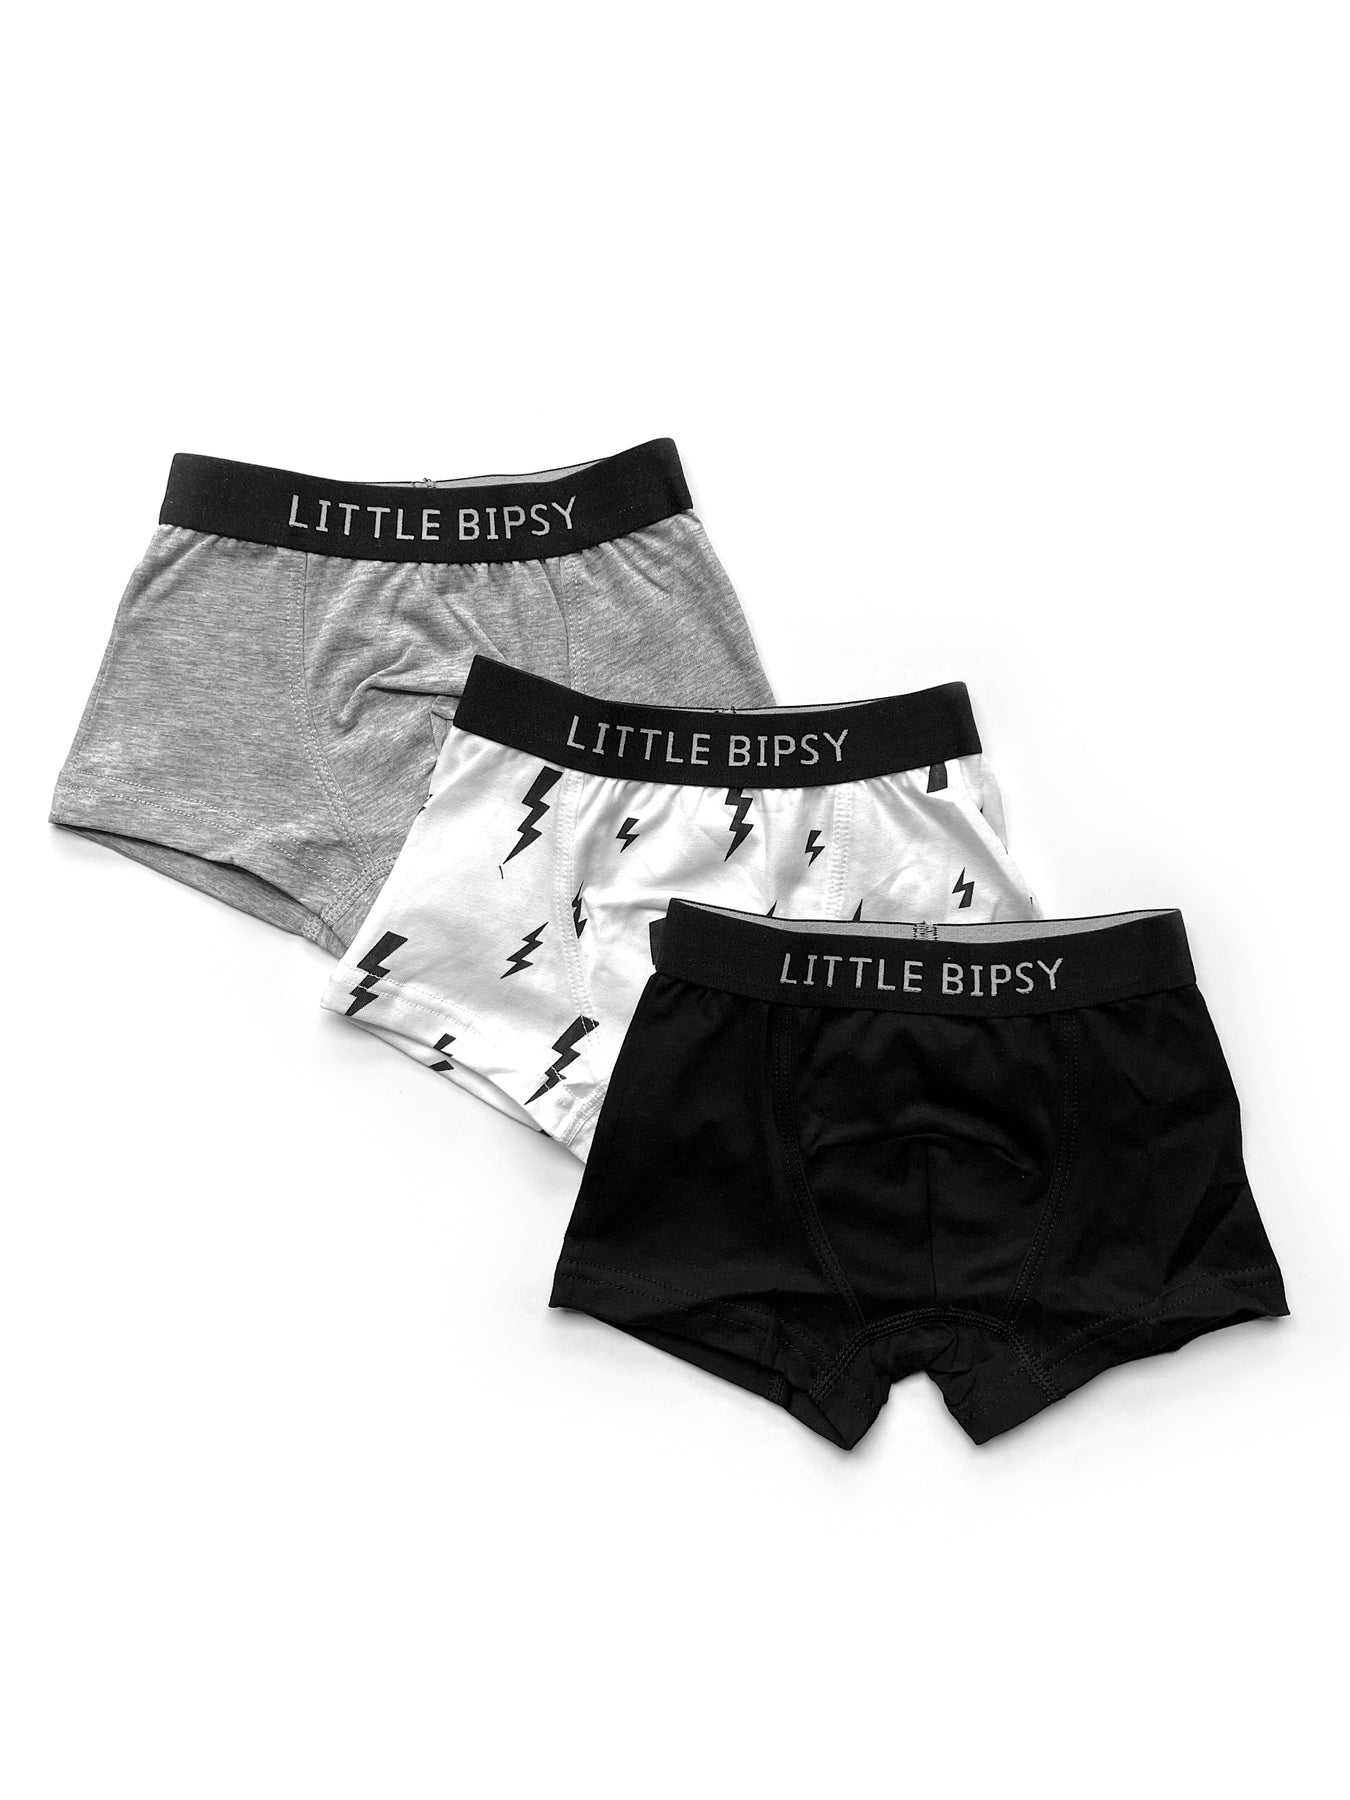 Calvin Klein Boys Underwear 8 Pack Boxer Briefs-Basics Value